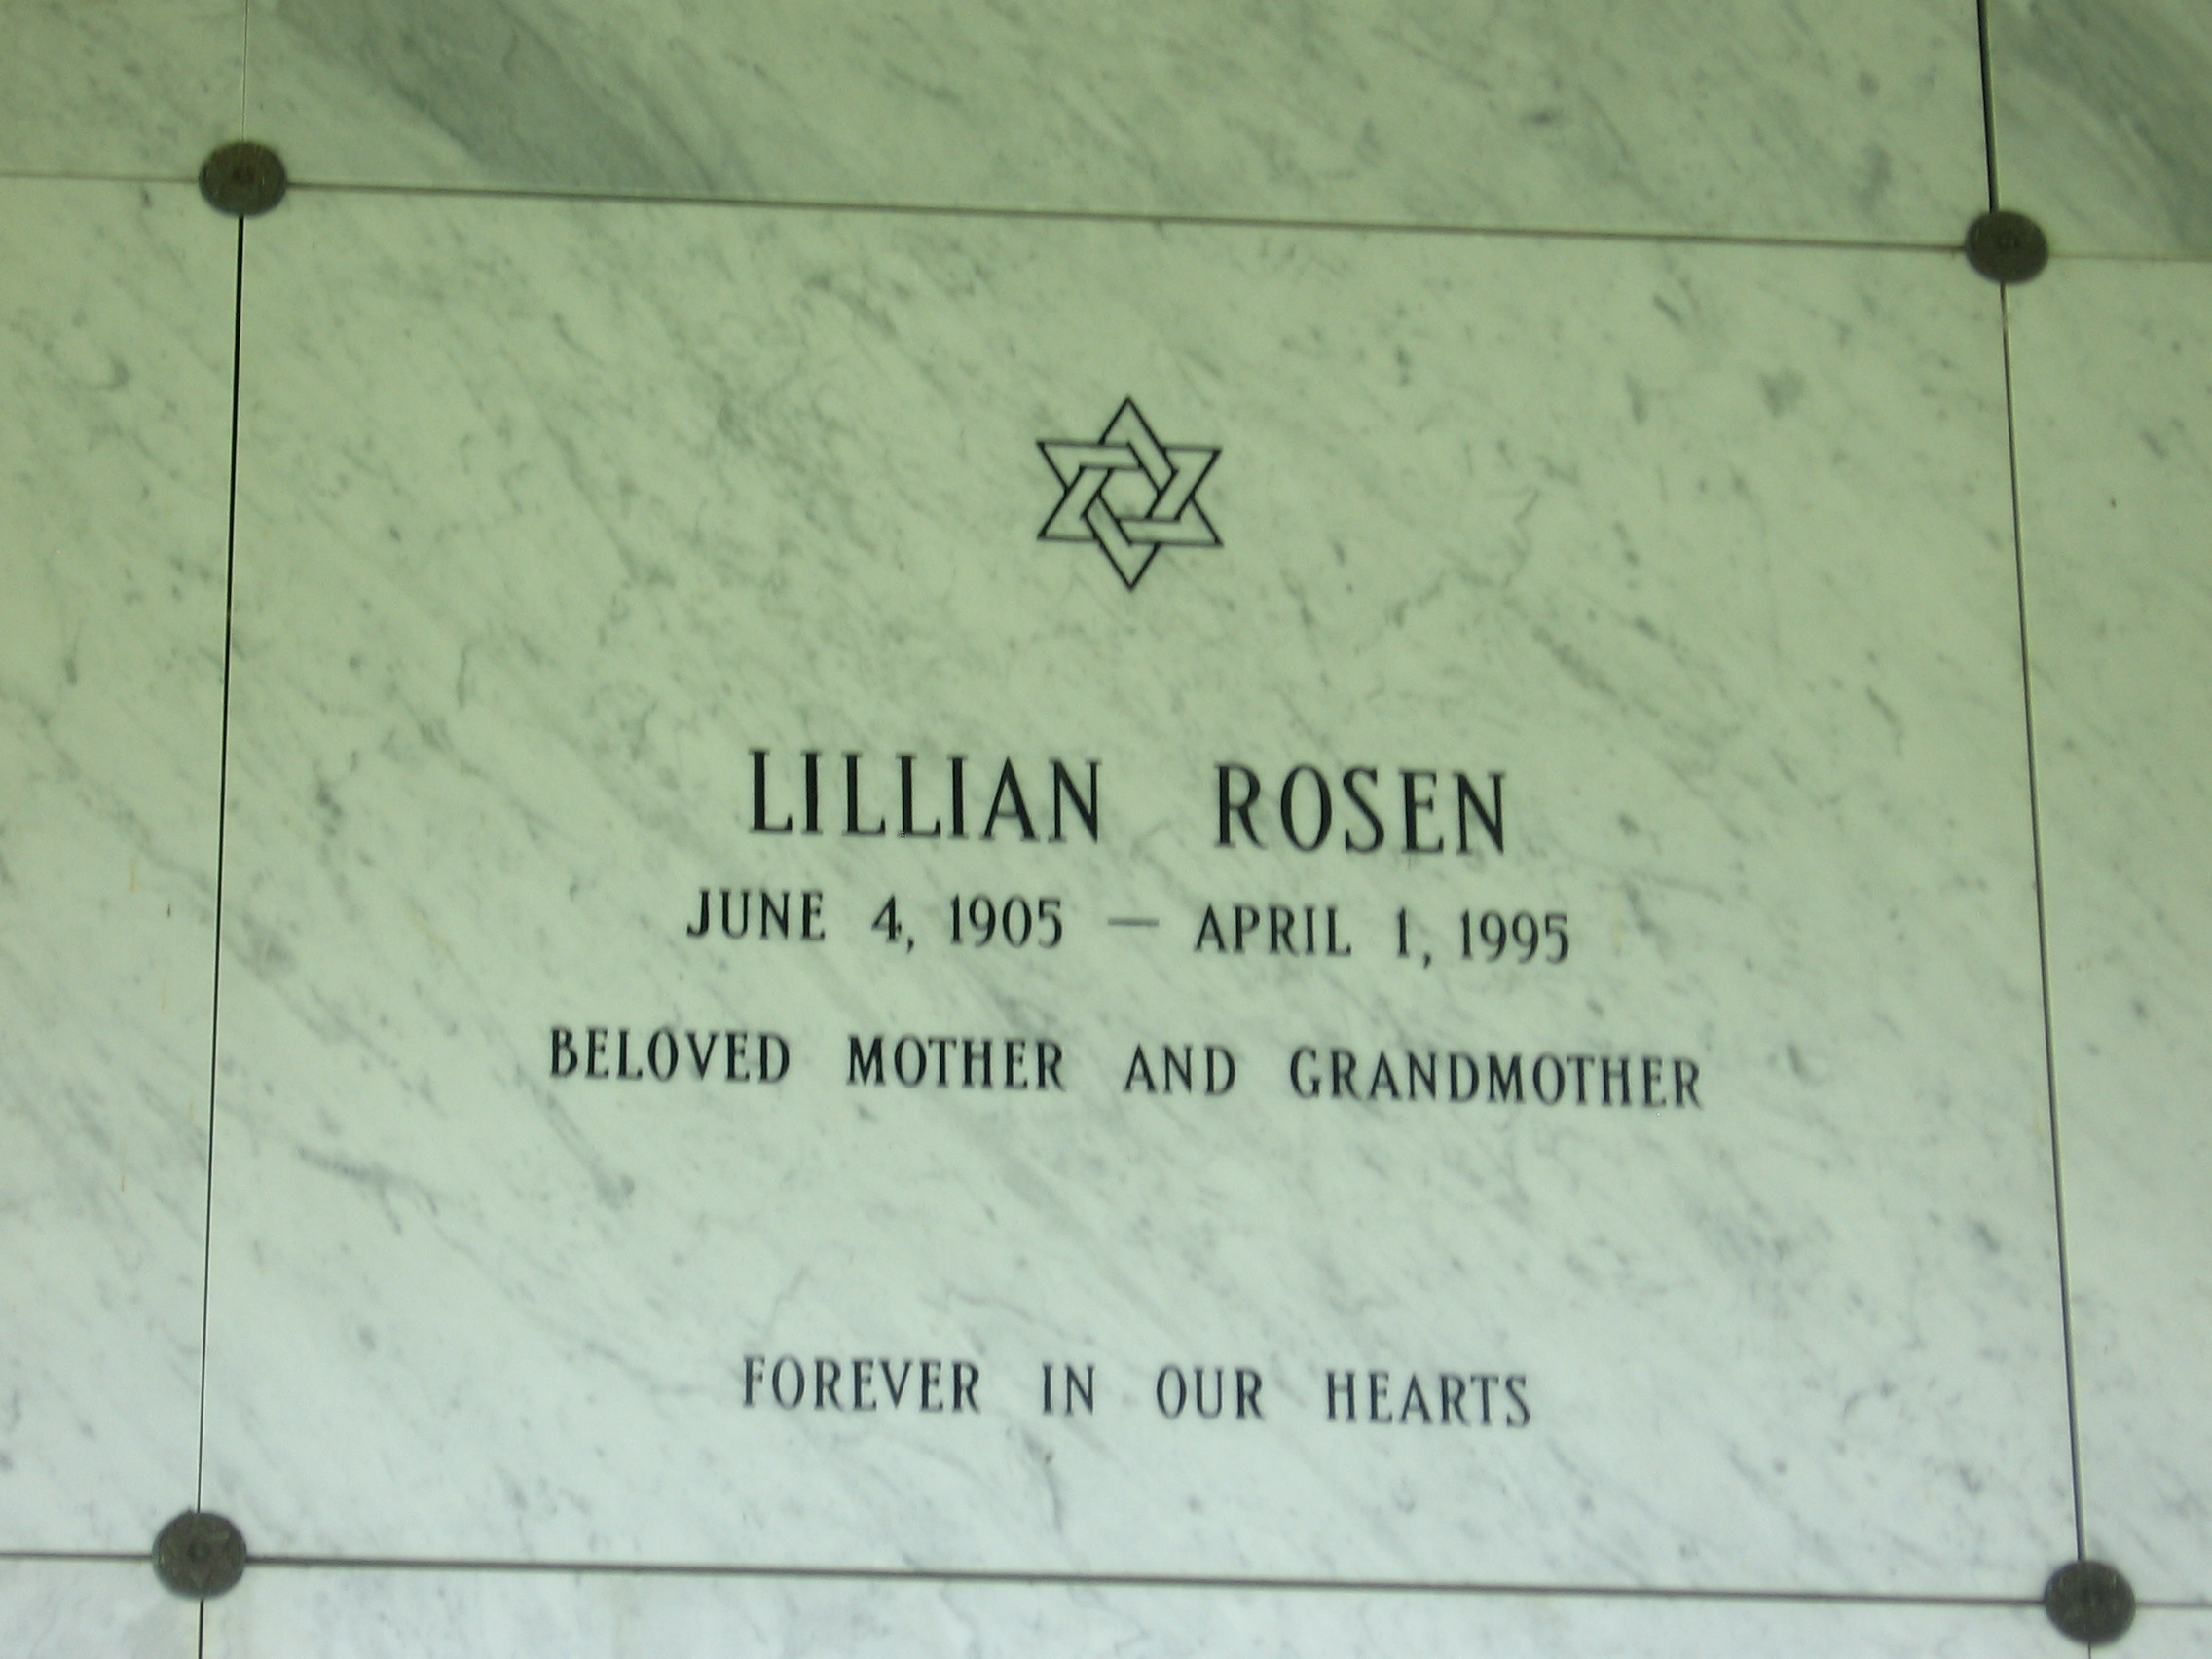 Lillian Rosen